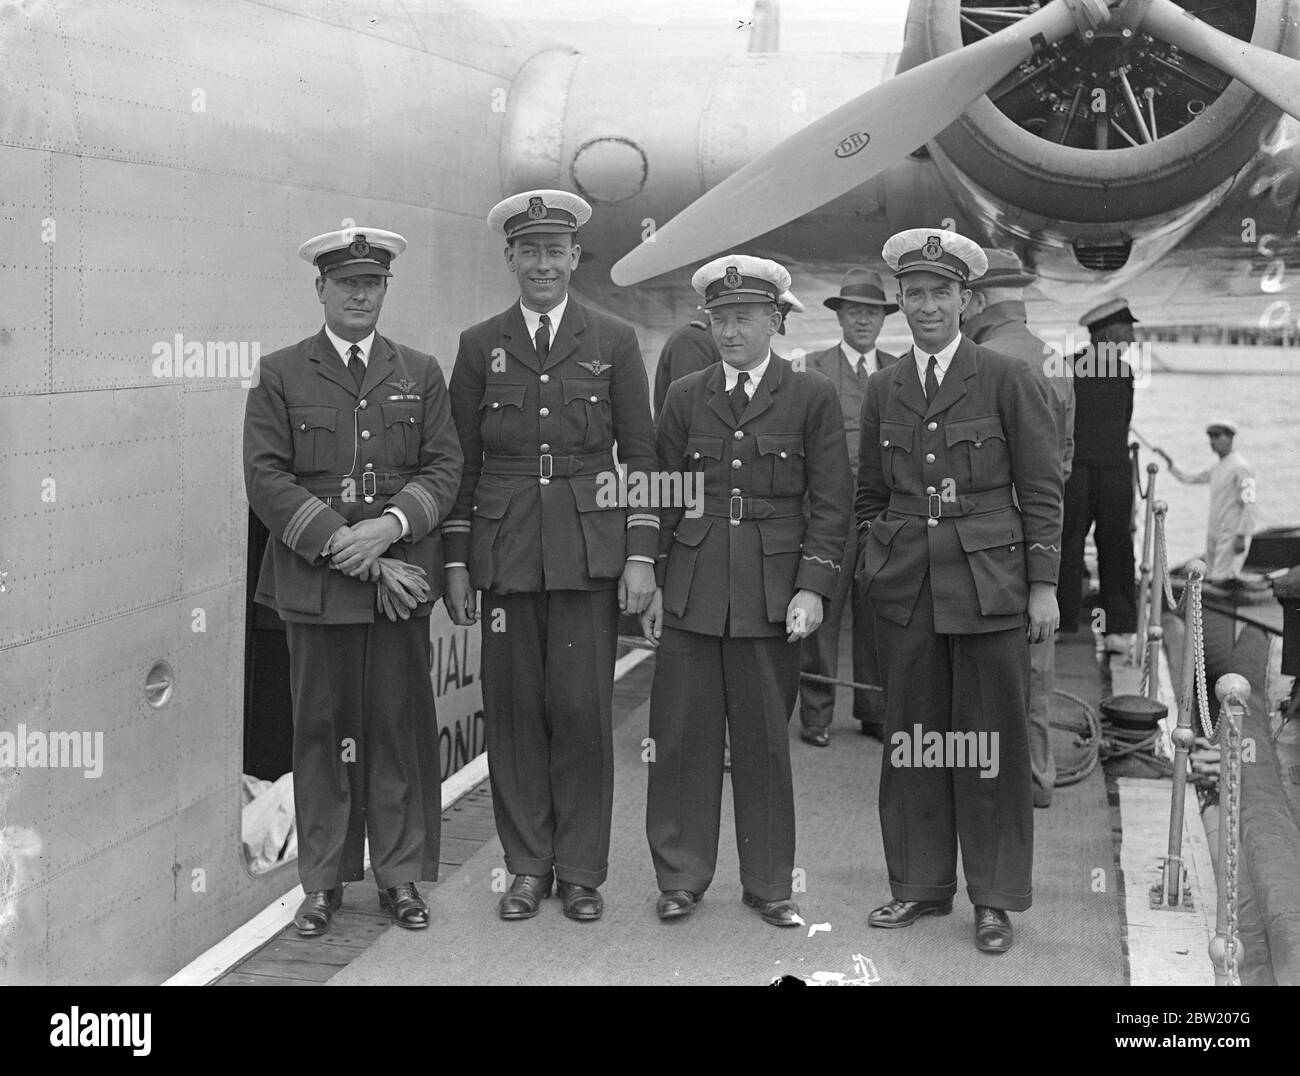 La nave volante della Imperial Airways Caledonia è tornata a Southampton dalla base aerea di Foynes, Irlanda, dopo aver completato la sua prima doppietta sperimentale dell'Atlantico. L'attraversamento dell'oceano di ritorno è stato effettuato in 12 ore e 7 minuti. I membri dell'equipaggio - da sinistra a destra: Capitano A. S. Wilcockson, primo ufficiale Bowes, e operatori radio Hobbs e Tommy Valetts.] 17 luglio 1937 Foto Stock